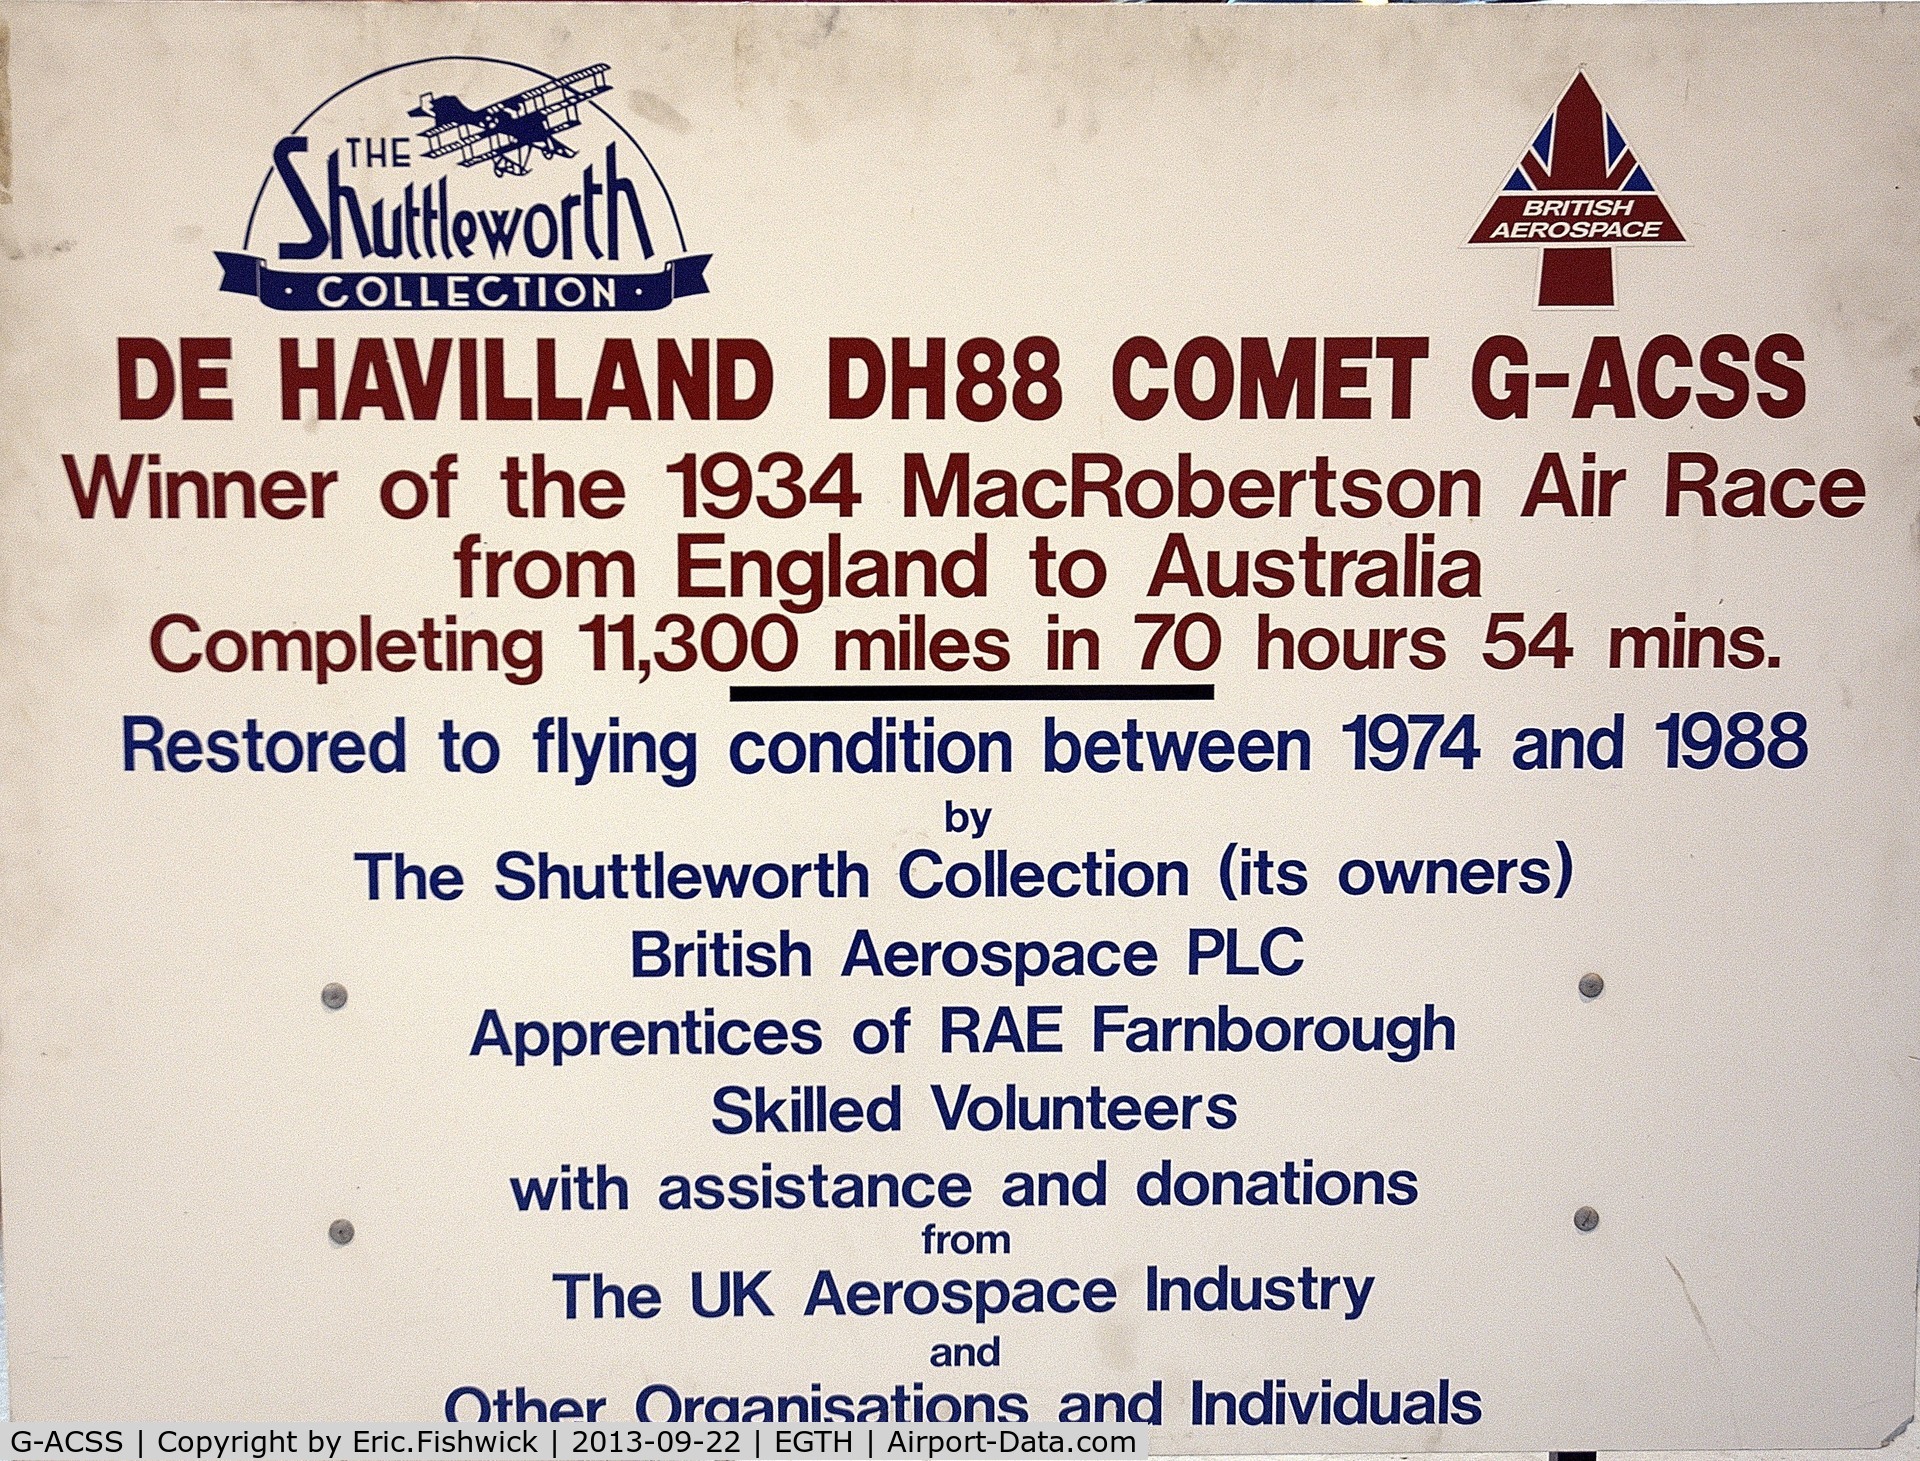 G-ACSS, 1934 De Havilland DH-88 Comet C/N 1996, DESCRIPTION